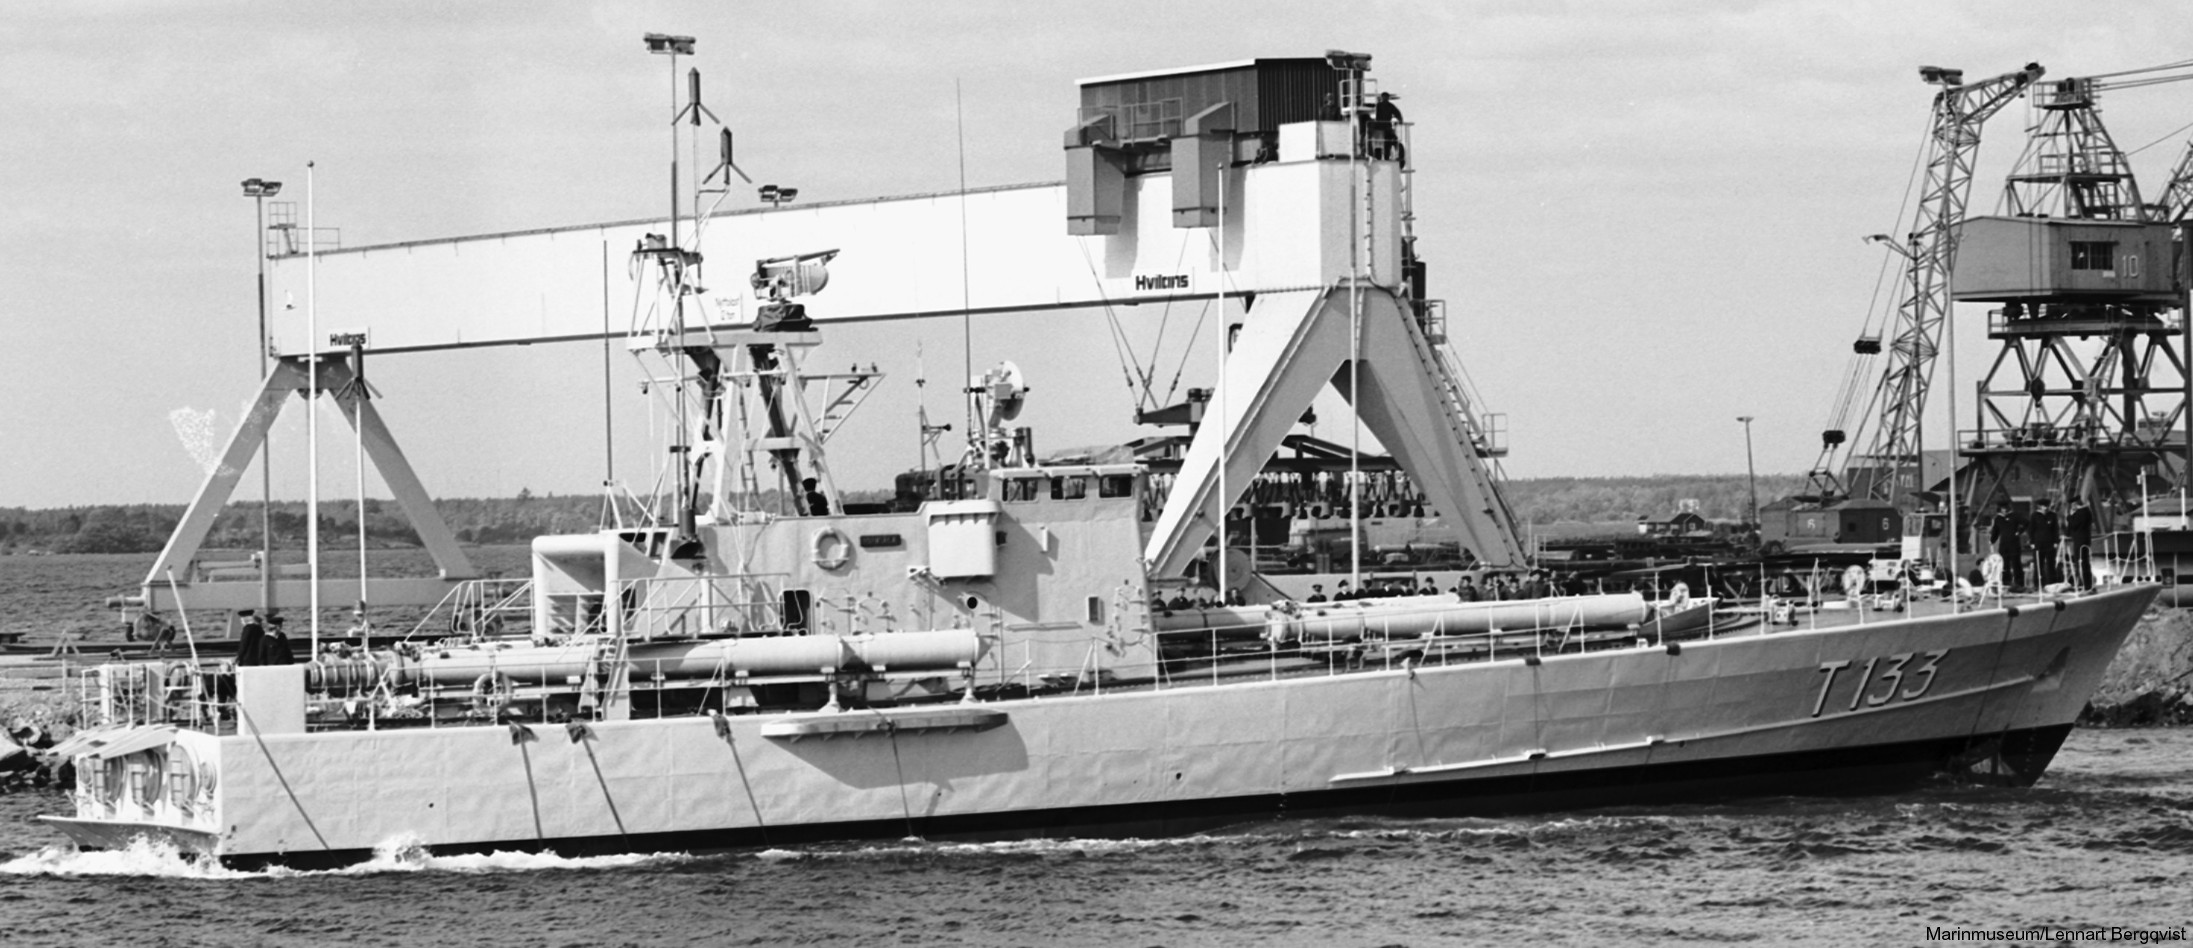 t133 norrtälje hswms hms norrköping class fast attack craft torpedo missile patrol boat swedish navy svenska marinen 04